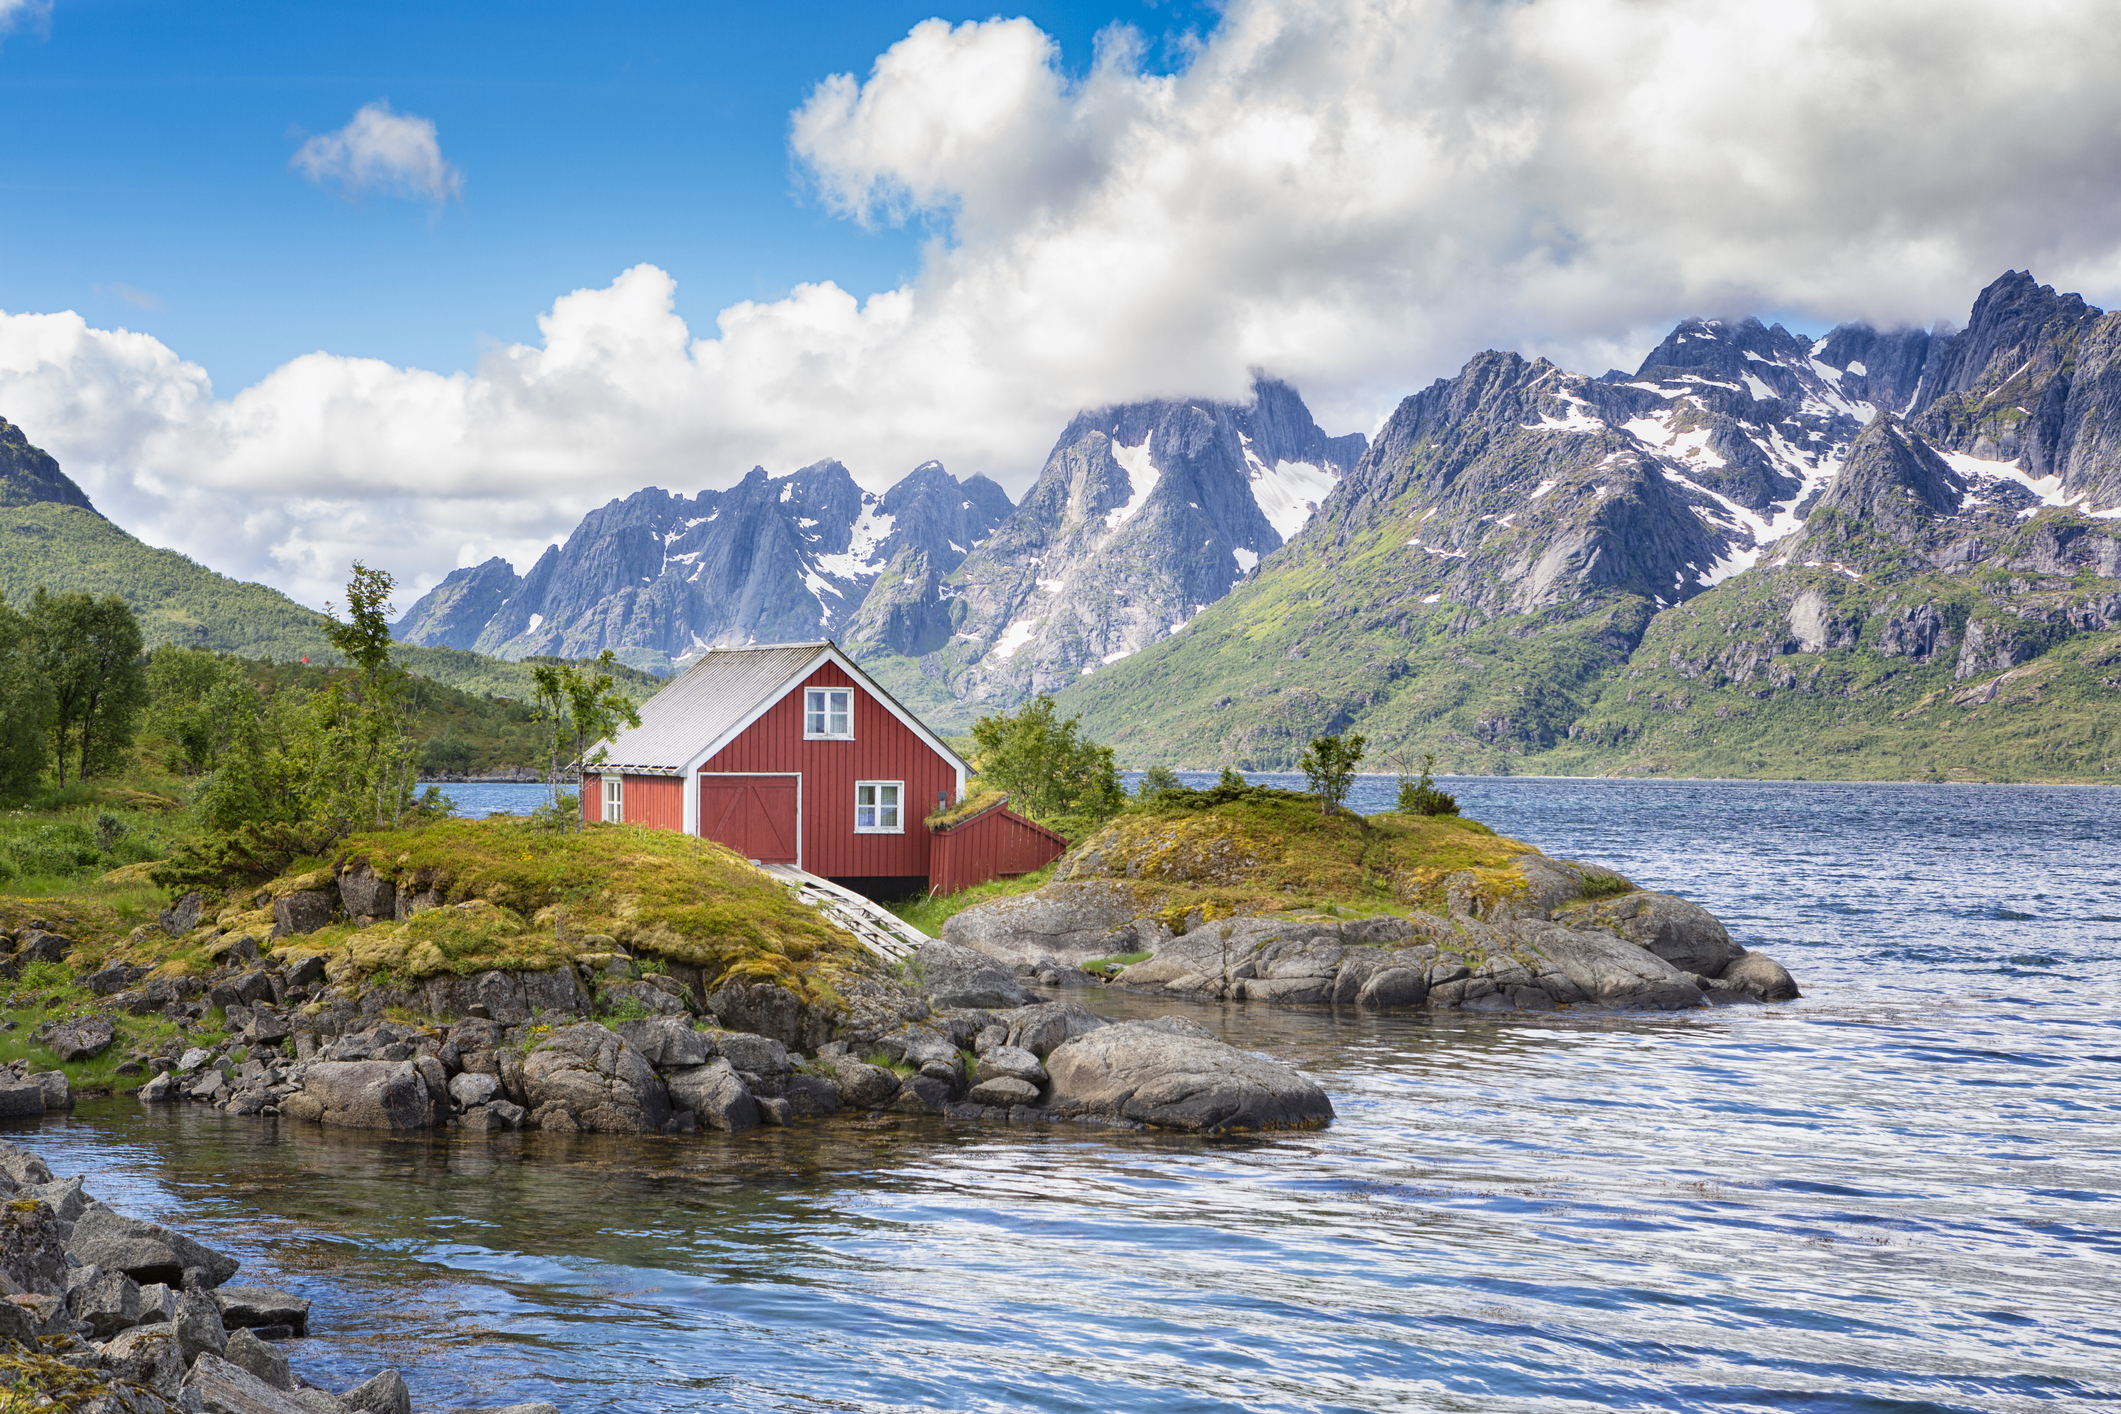 <p>Лофотенски острови - Норвегия</p>

<p>Няма как да останете резервирани към този грандиозен архипелаг в Норвежко море. Въпреки студеното време, красотата на островите не е за изпускане.</p>